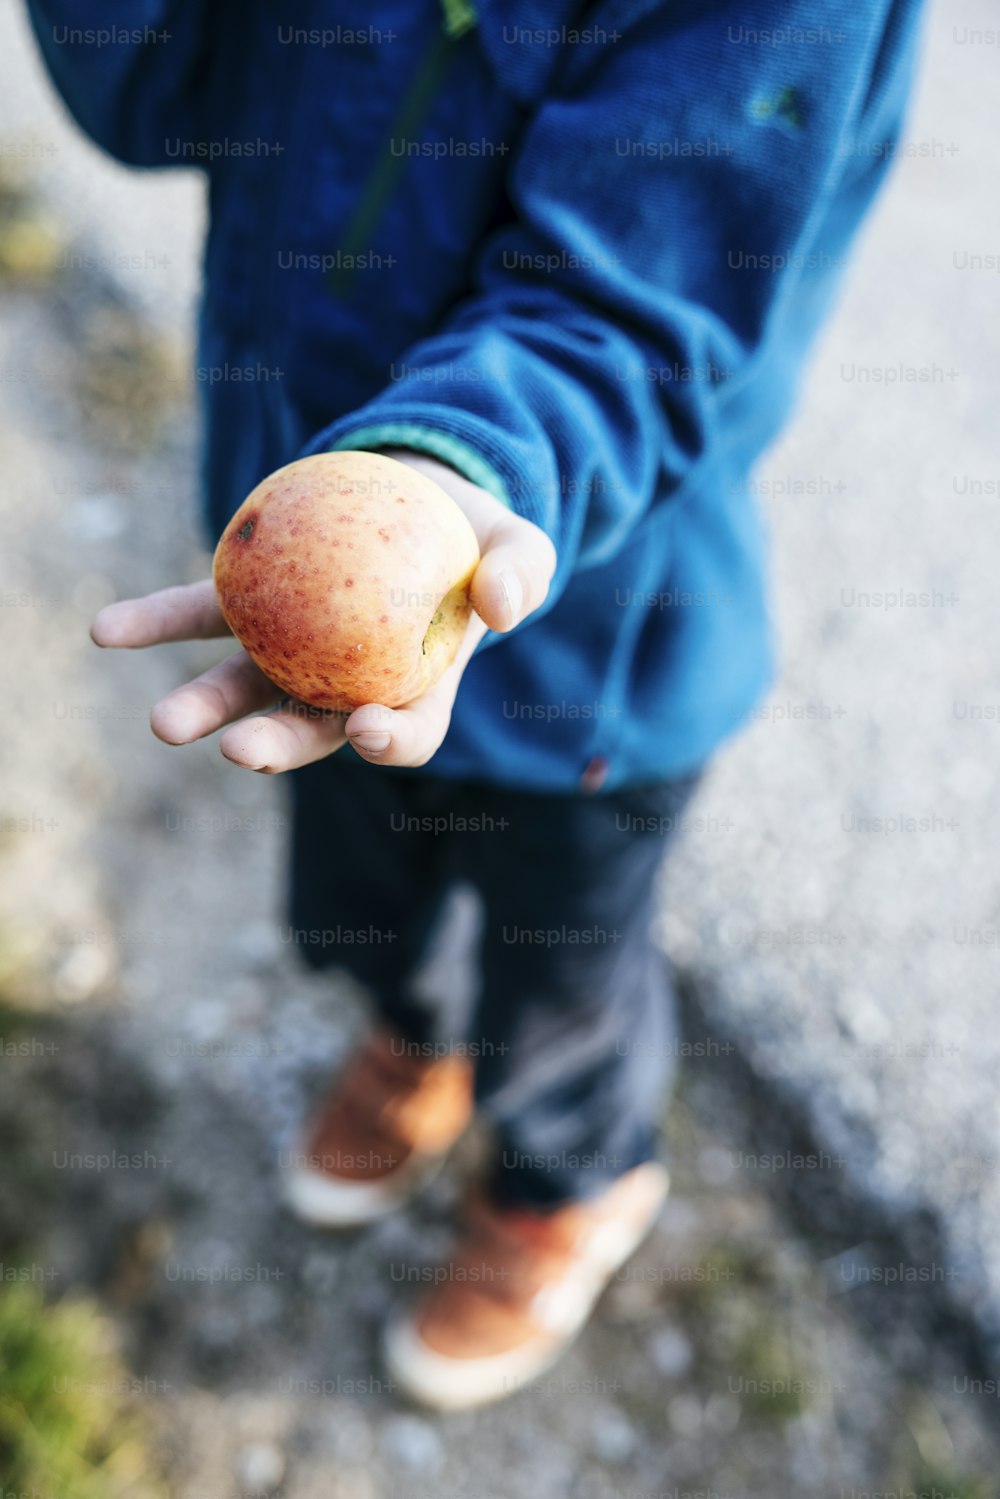 손에 과일 한 조각을 들고 있는 사람